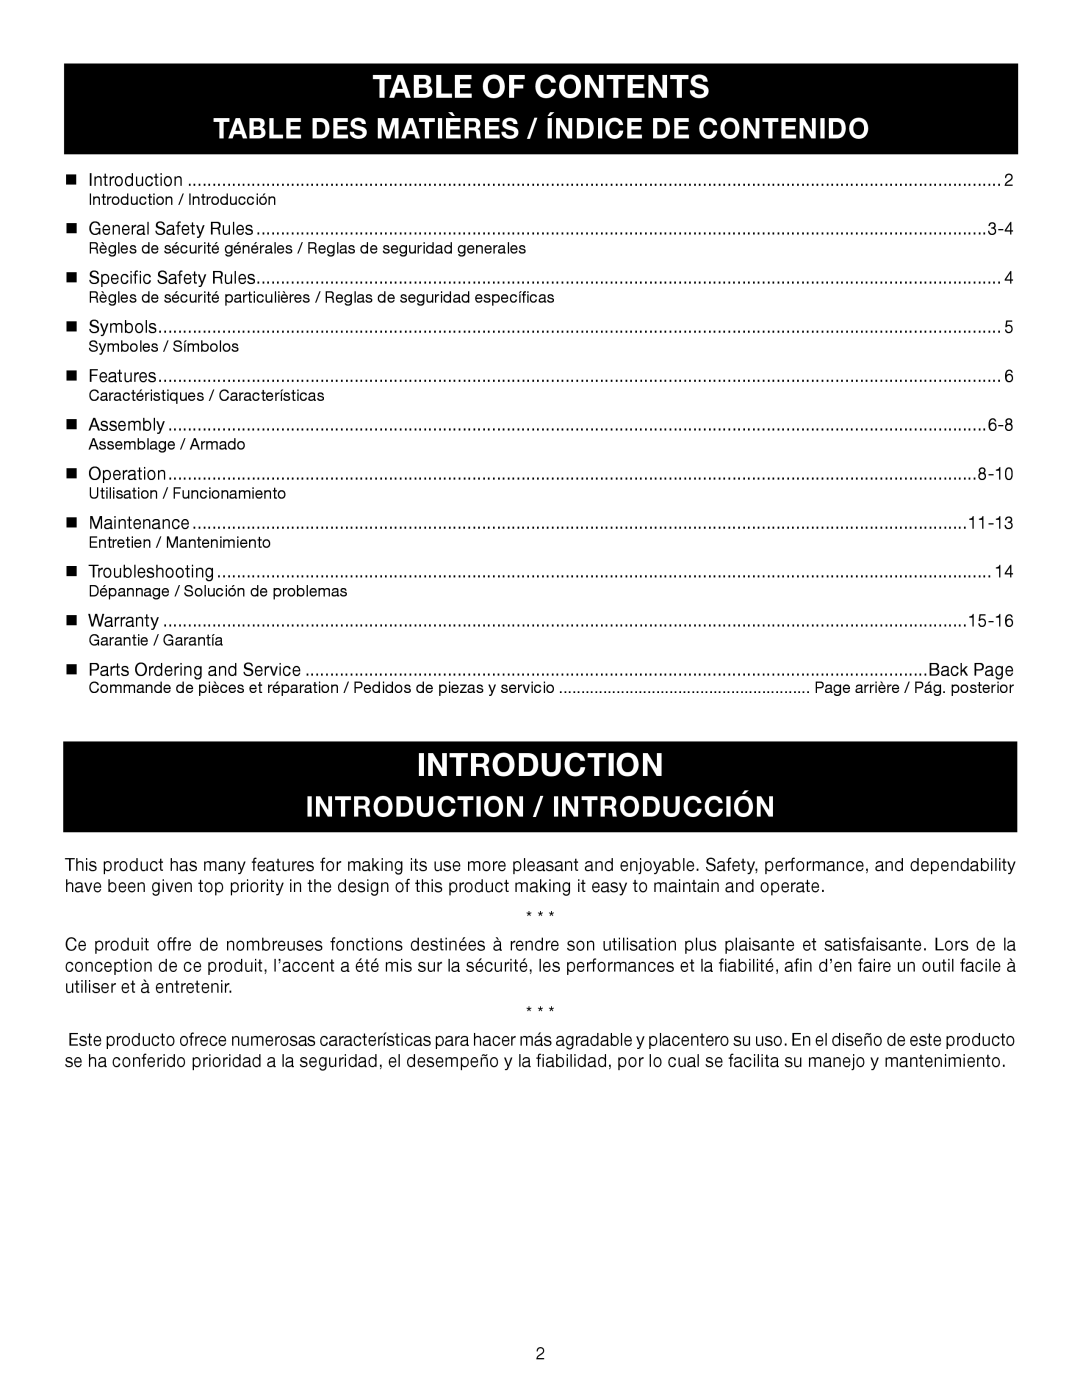 Ryobi RY28140, RY28120 Table Of Contents, Table Des Matières / Índice De Contenido, Introduction / Introducción 